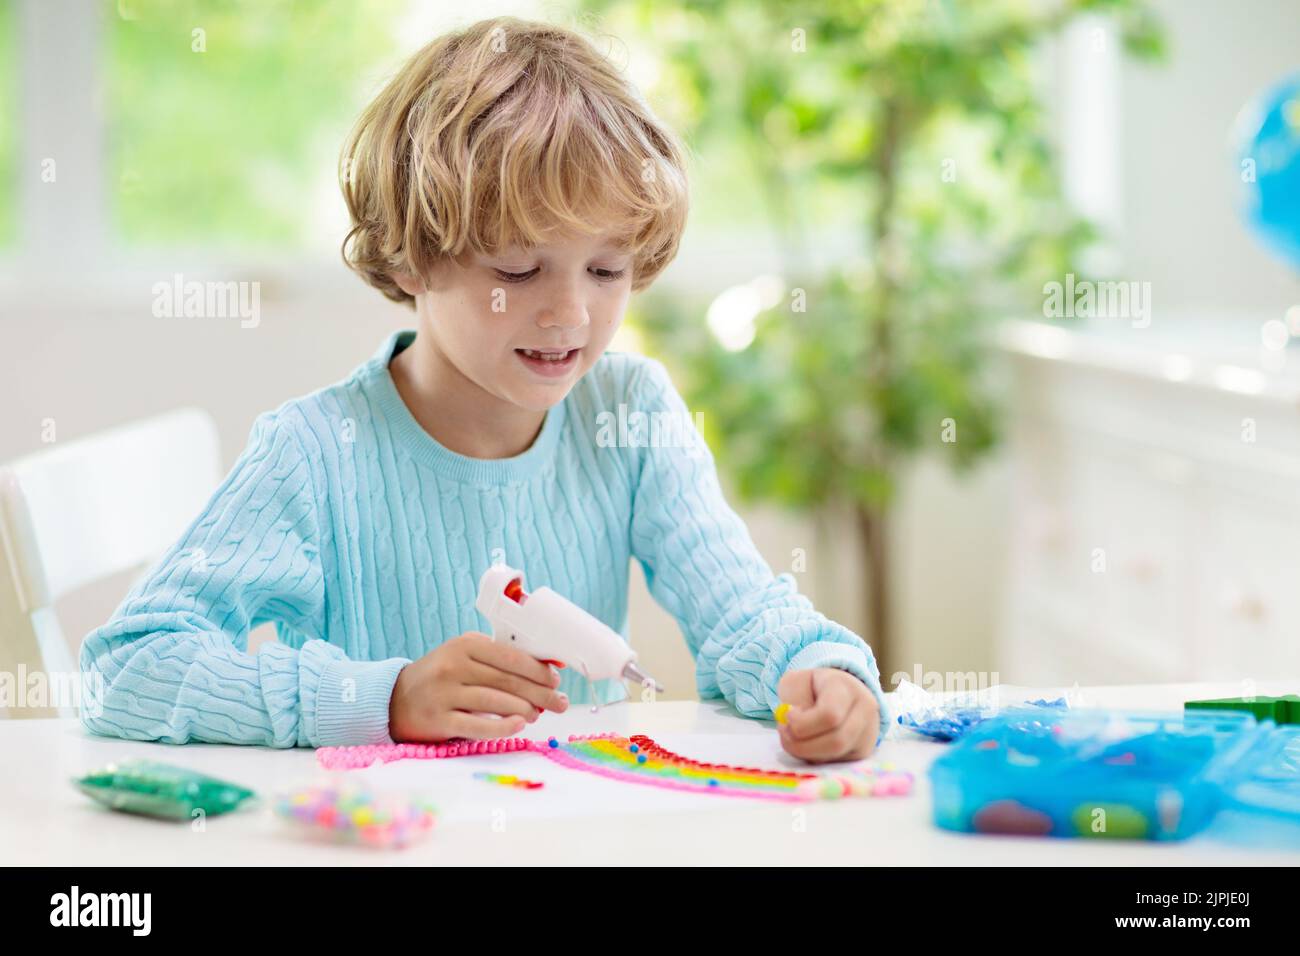 Basteln für Kinder. Kind mit Heißklebepistole. Kreativer kleiner Junge, der Knöpfe und Perlen im Regenbogen-Design klebt. Kunst und Kreativität Klasse in der Schule Stockfoto